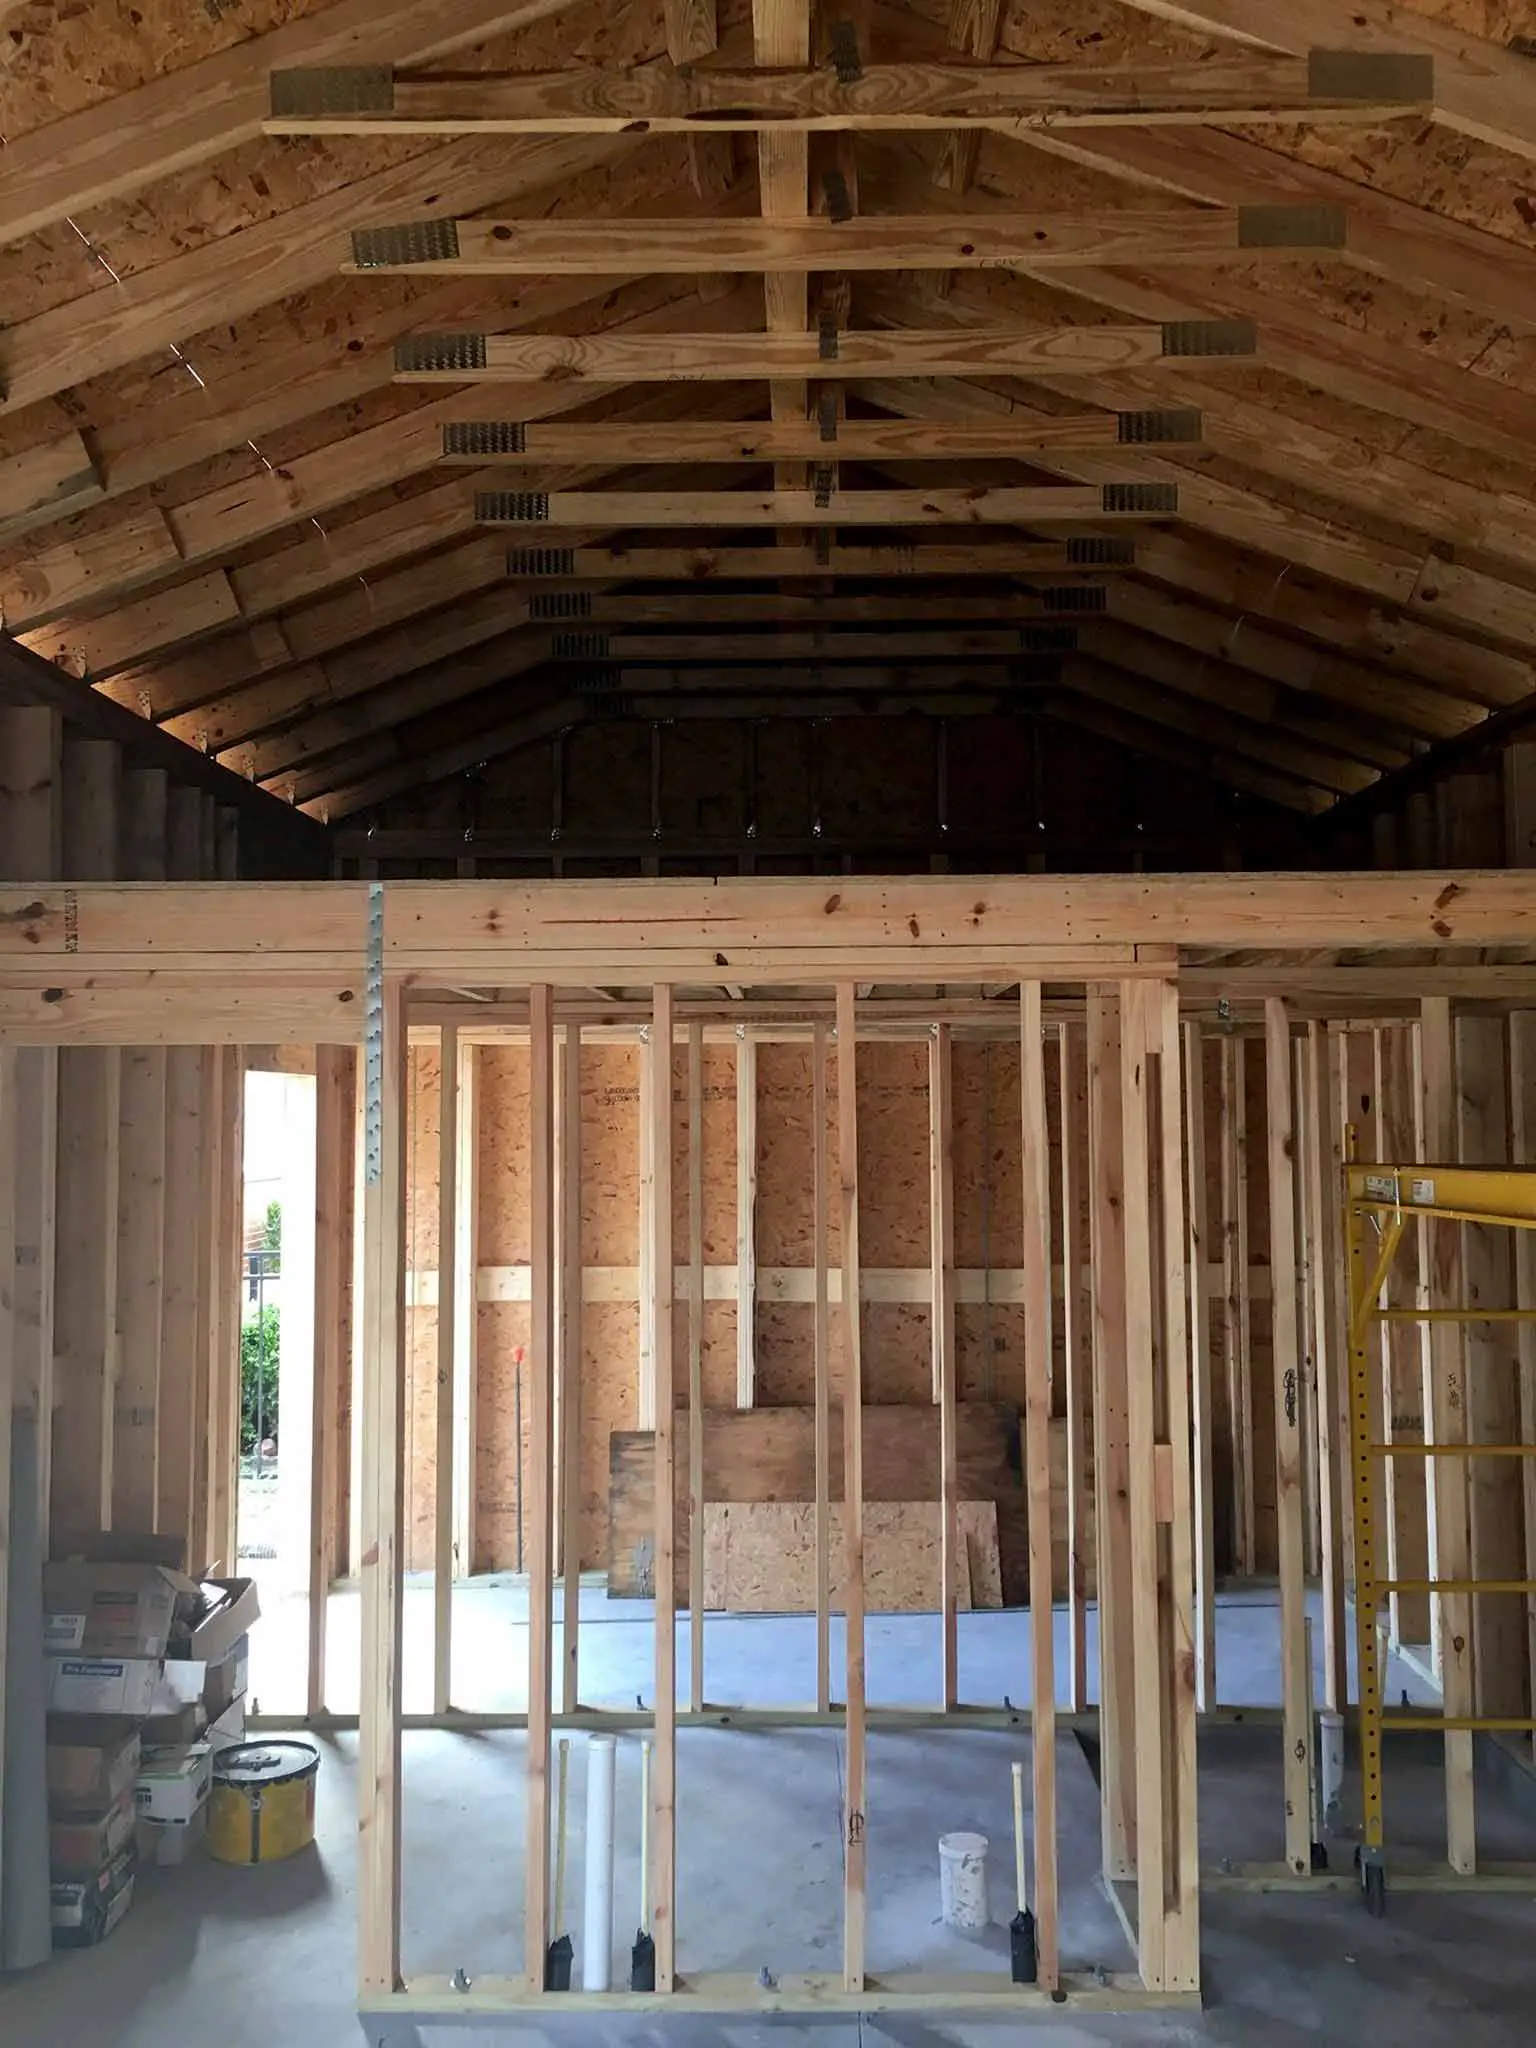 Loft - guest house construction progress - That Homebird Life Blog